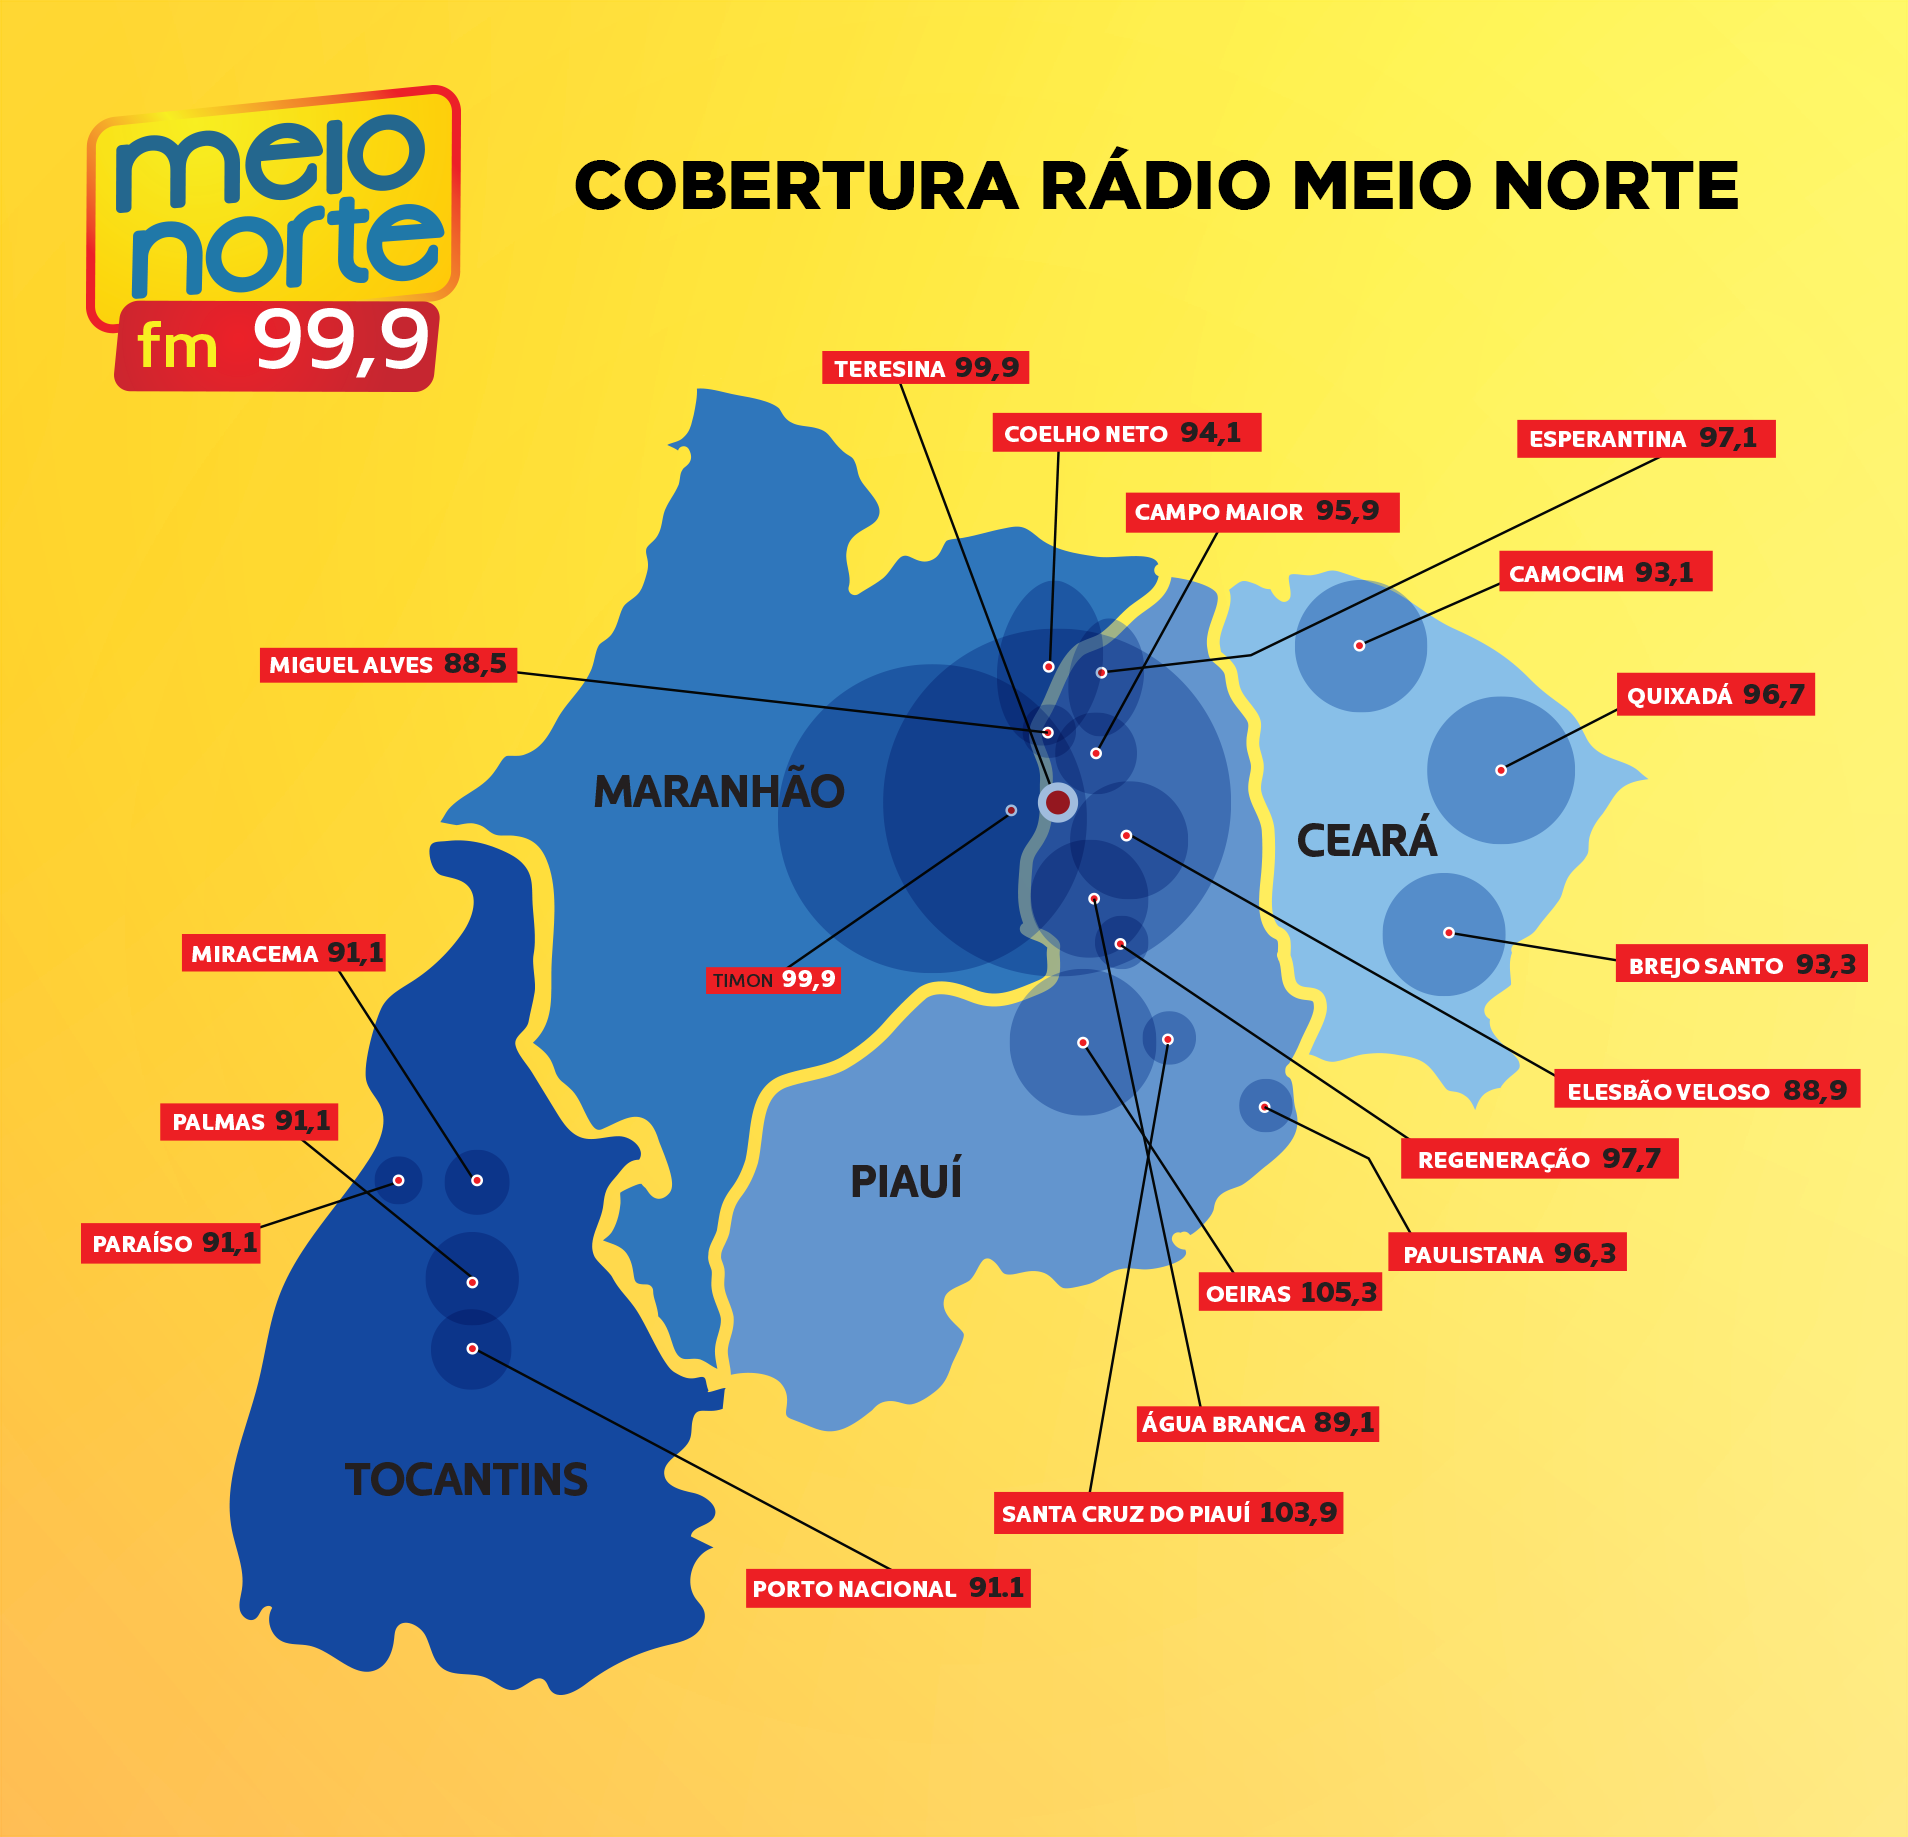 Cobertura da Rádio Meio Norte FM